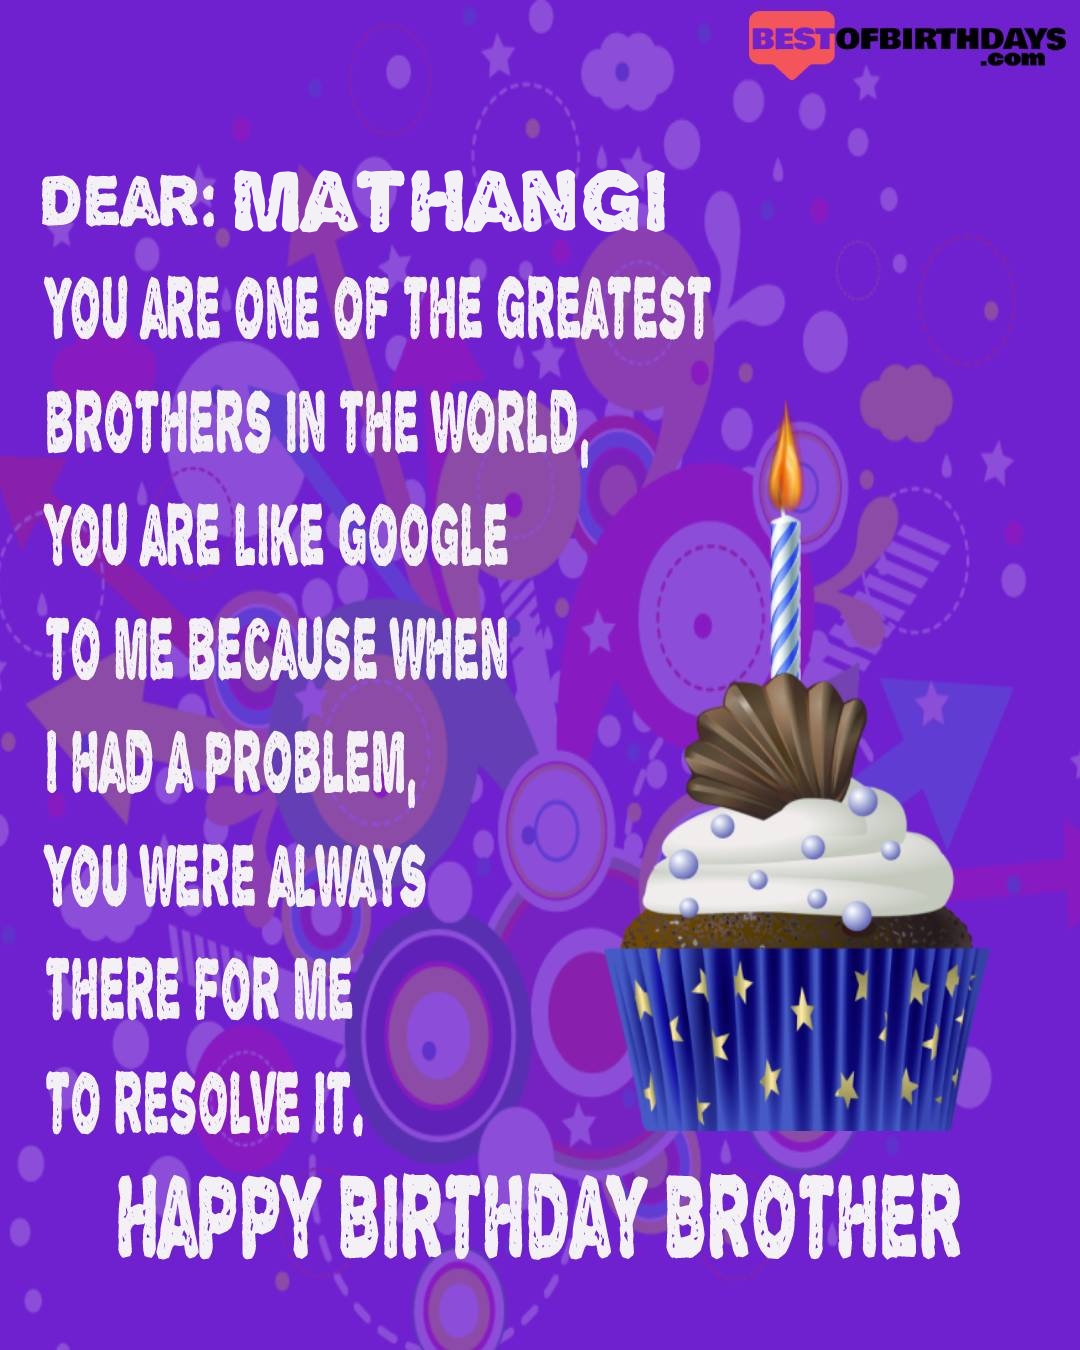 Happy birthday mathangi bhai brother bro